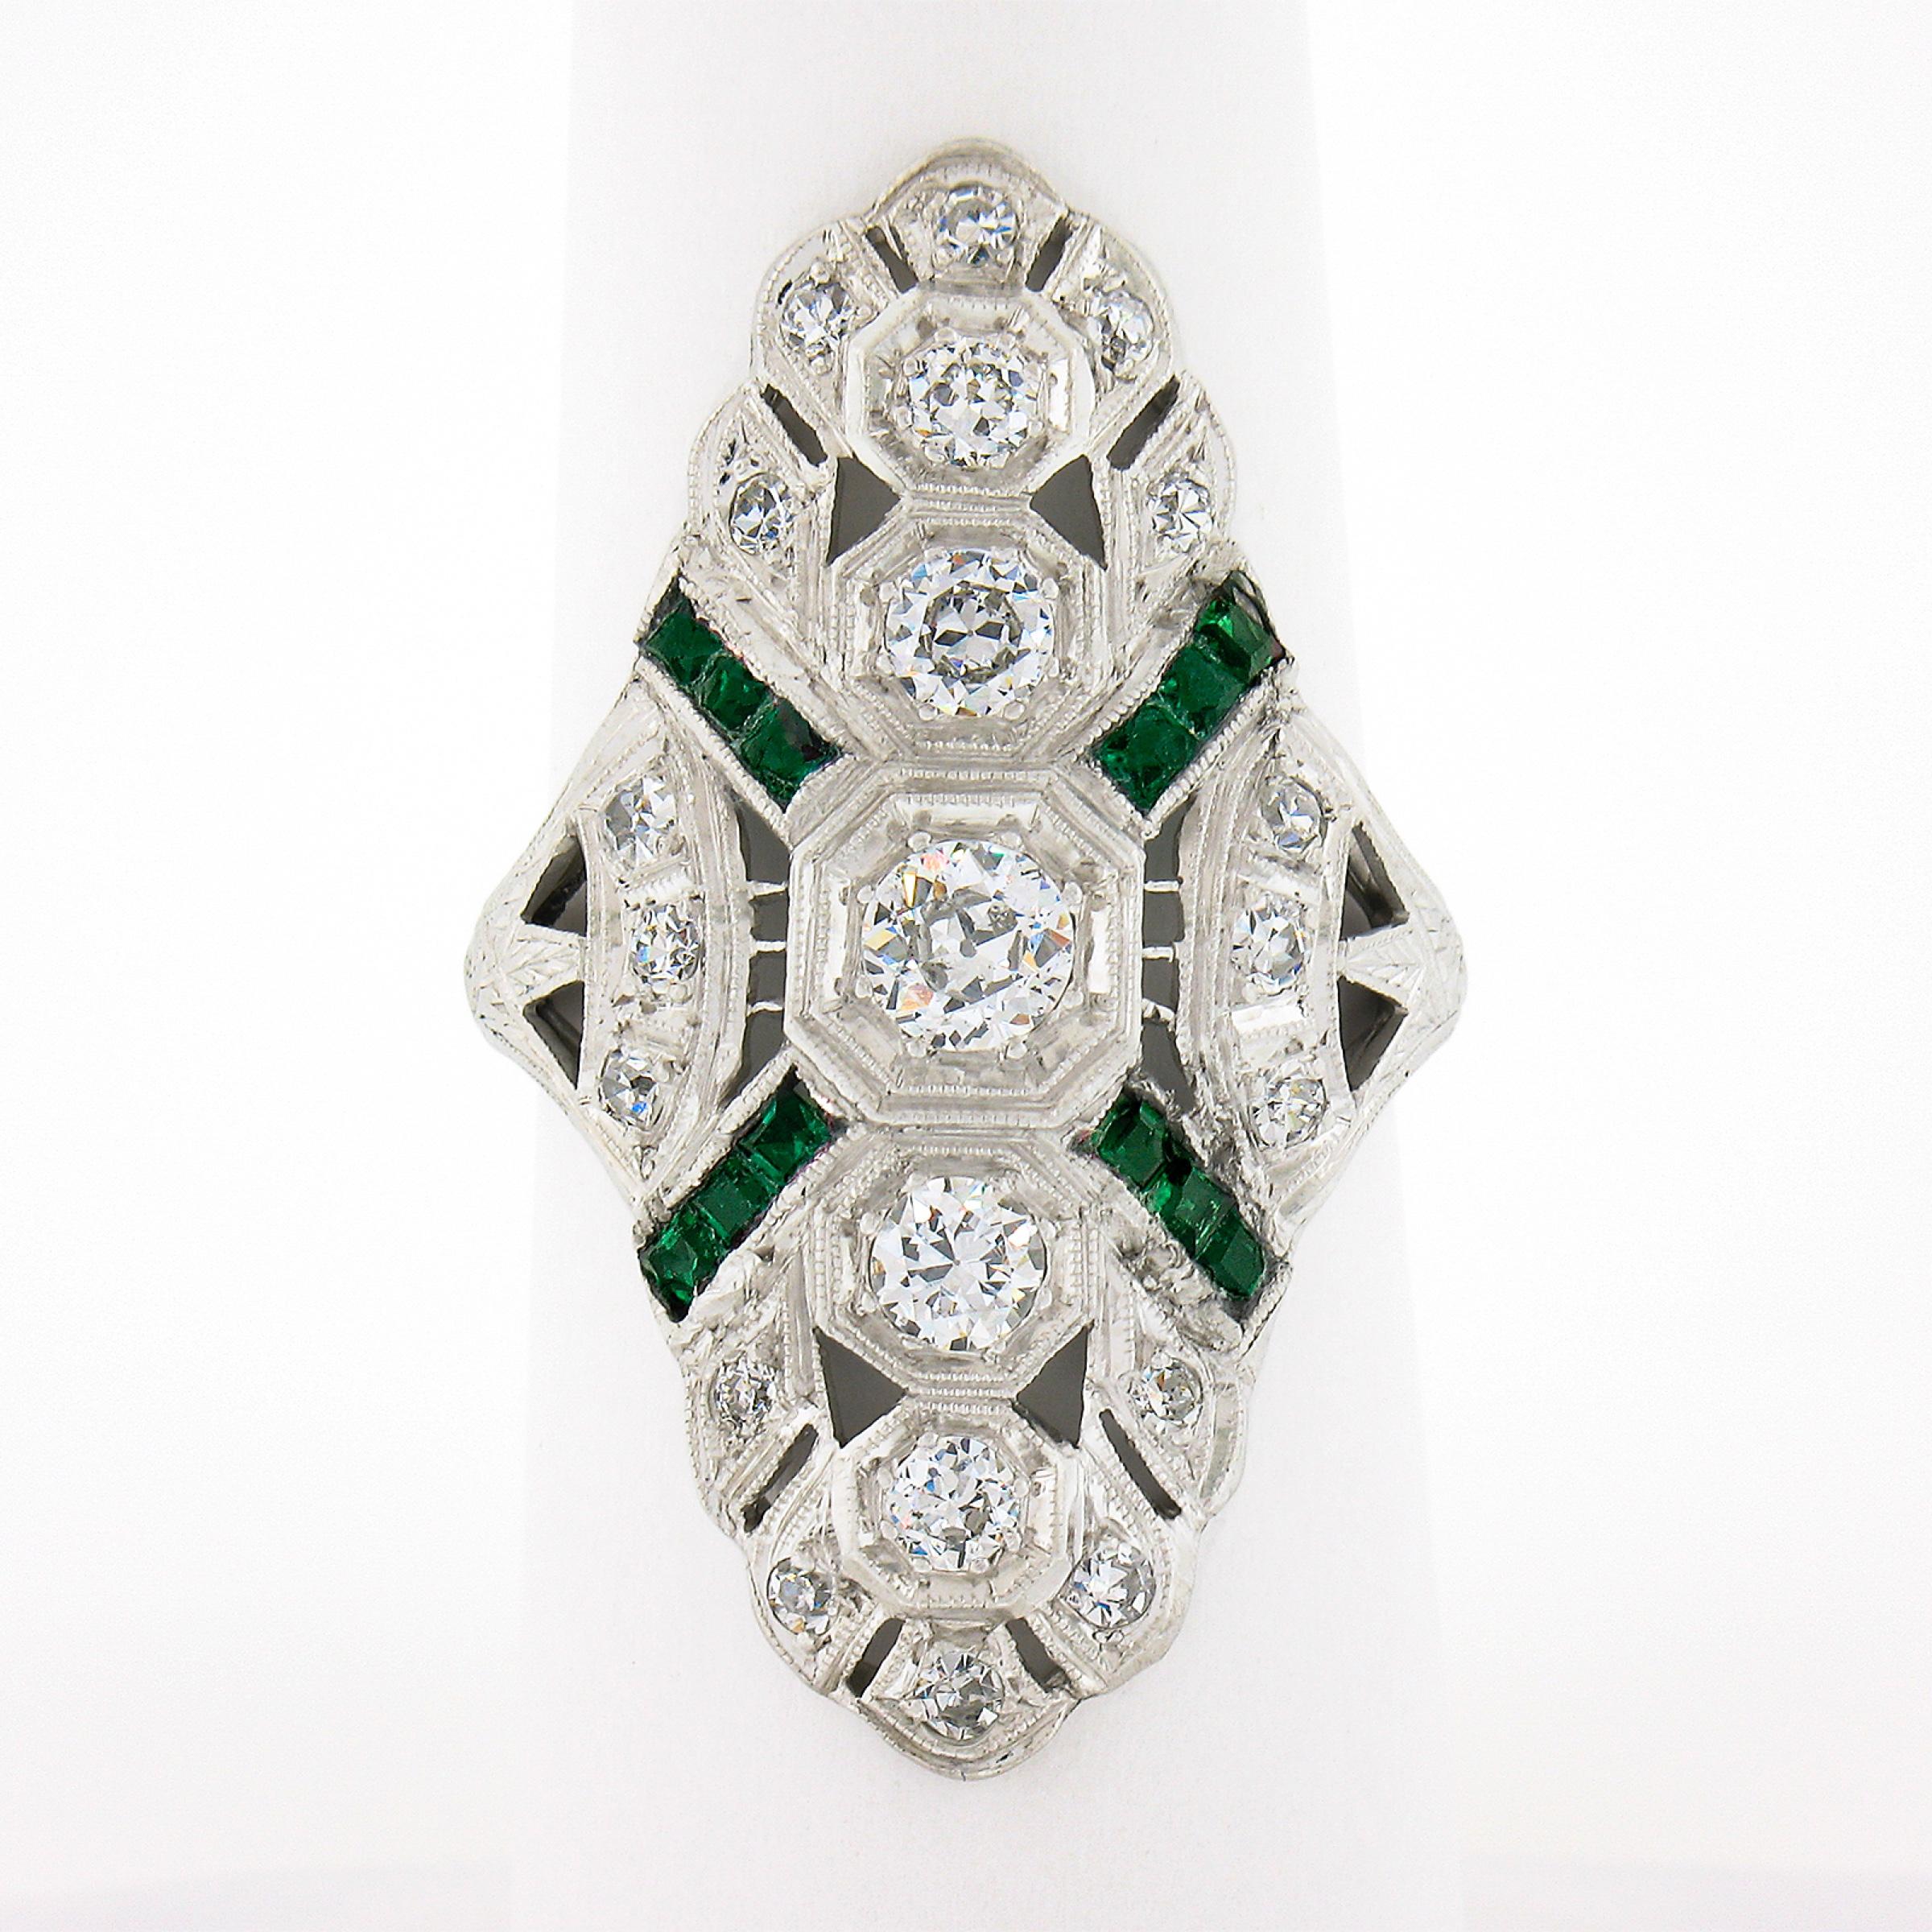 Dieser unglaubliche, originale, antike Art-Deco-Ring ist aus massivem Platin gefertigt. Der Ring zeigt 5 Diamanten im alten europäischen Schliff, die elegant in achteckigen Fassungen in der Mitte des langen und ungewöhnlichen Designs gefasst sind,